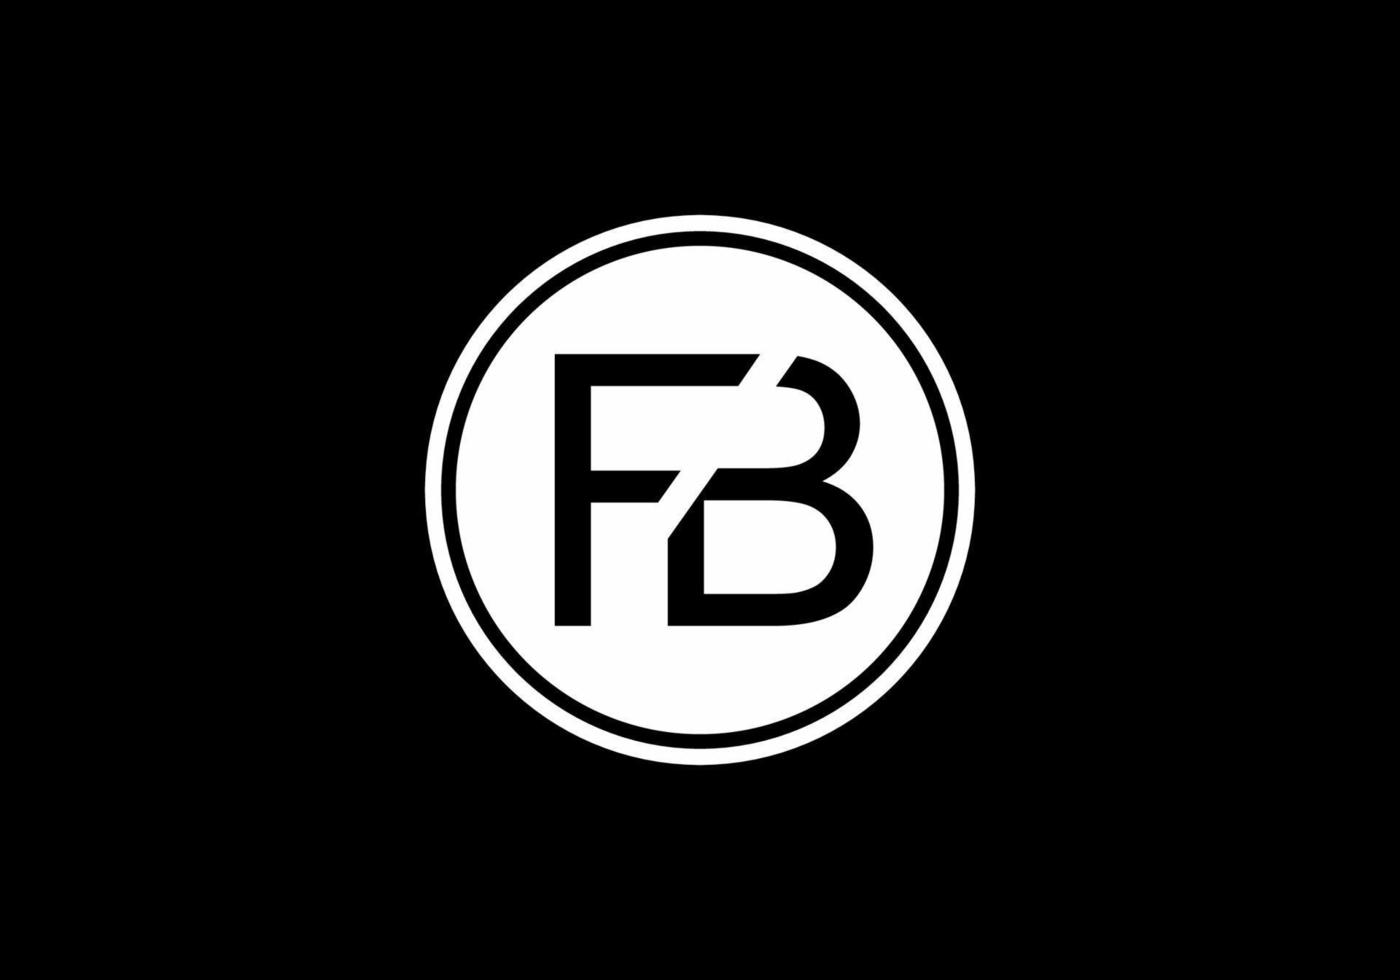 zwart wit fb beginletter logo vector